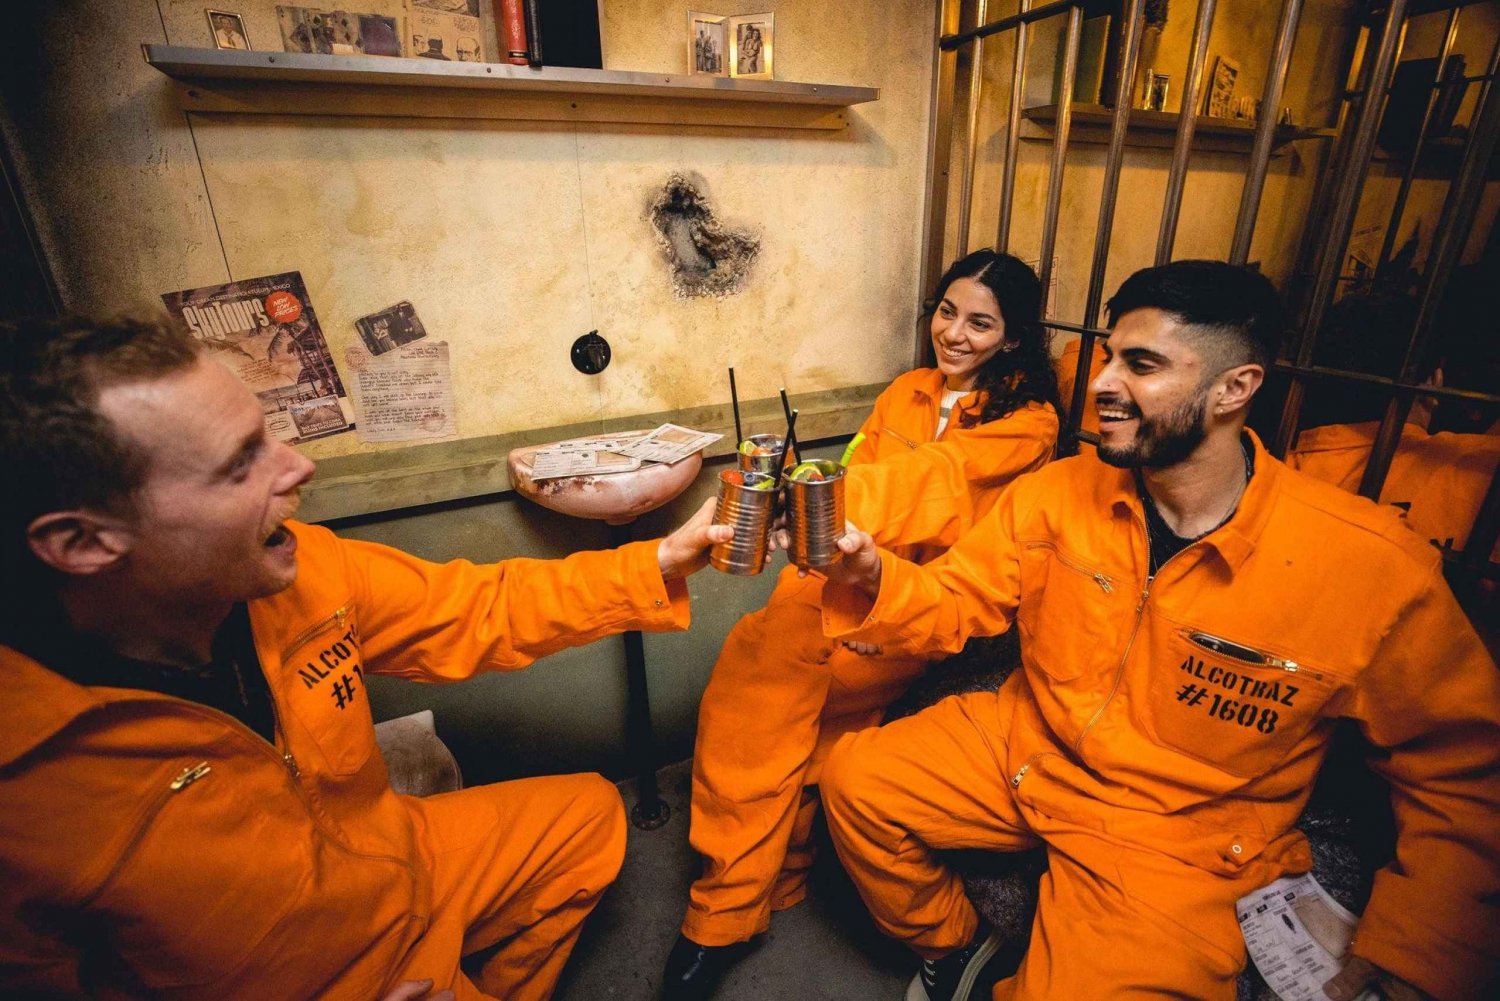 Londres: Ingresso para a experiência imersiva de coquetel na prisão Alcotraz